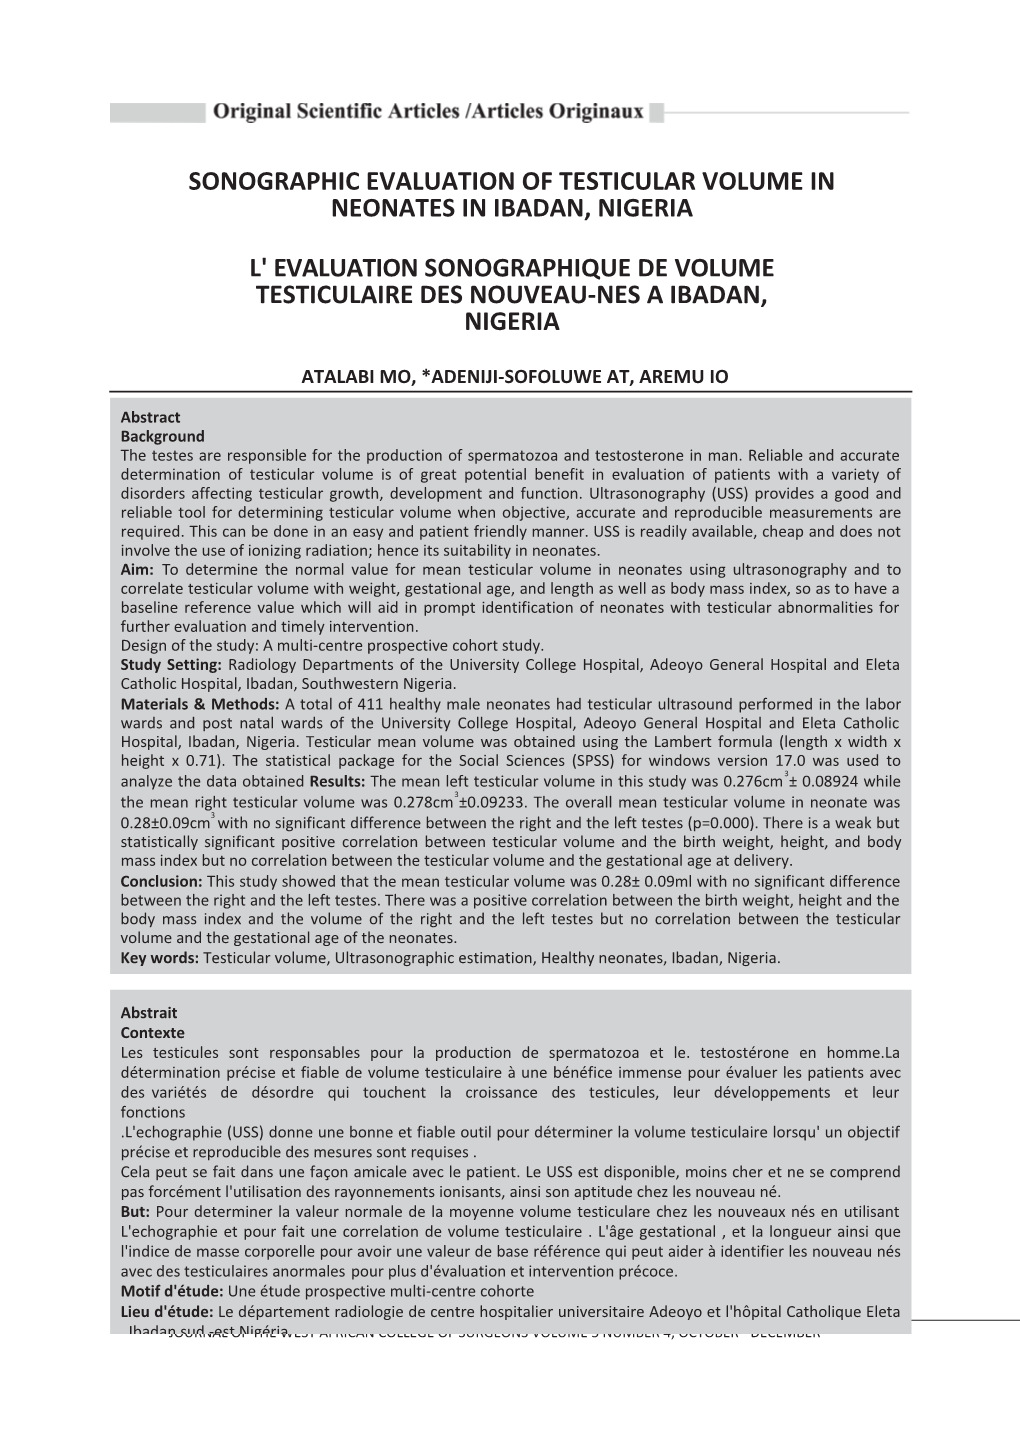 Sonographic Evaluation of Testicular Volume in Neonates in Ibadan, Nigeria